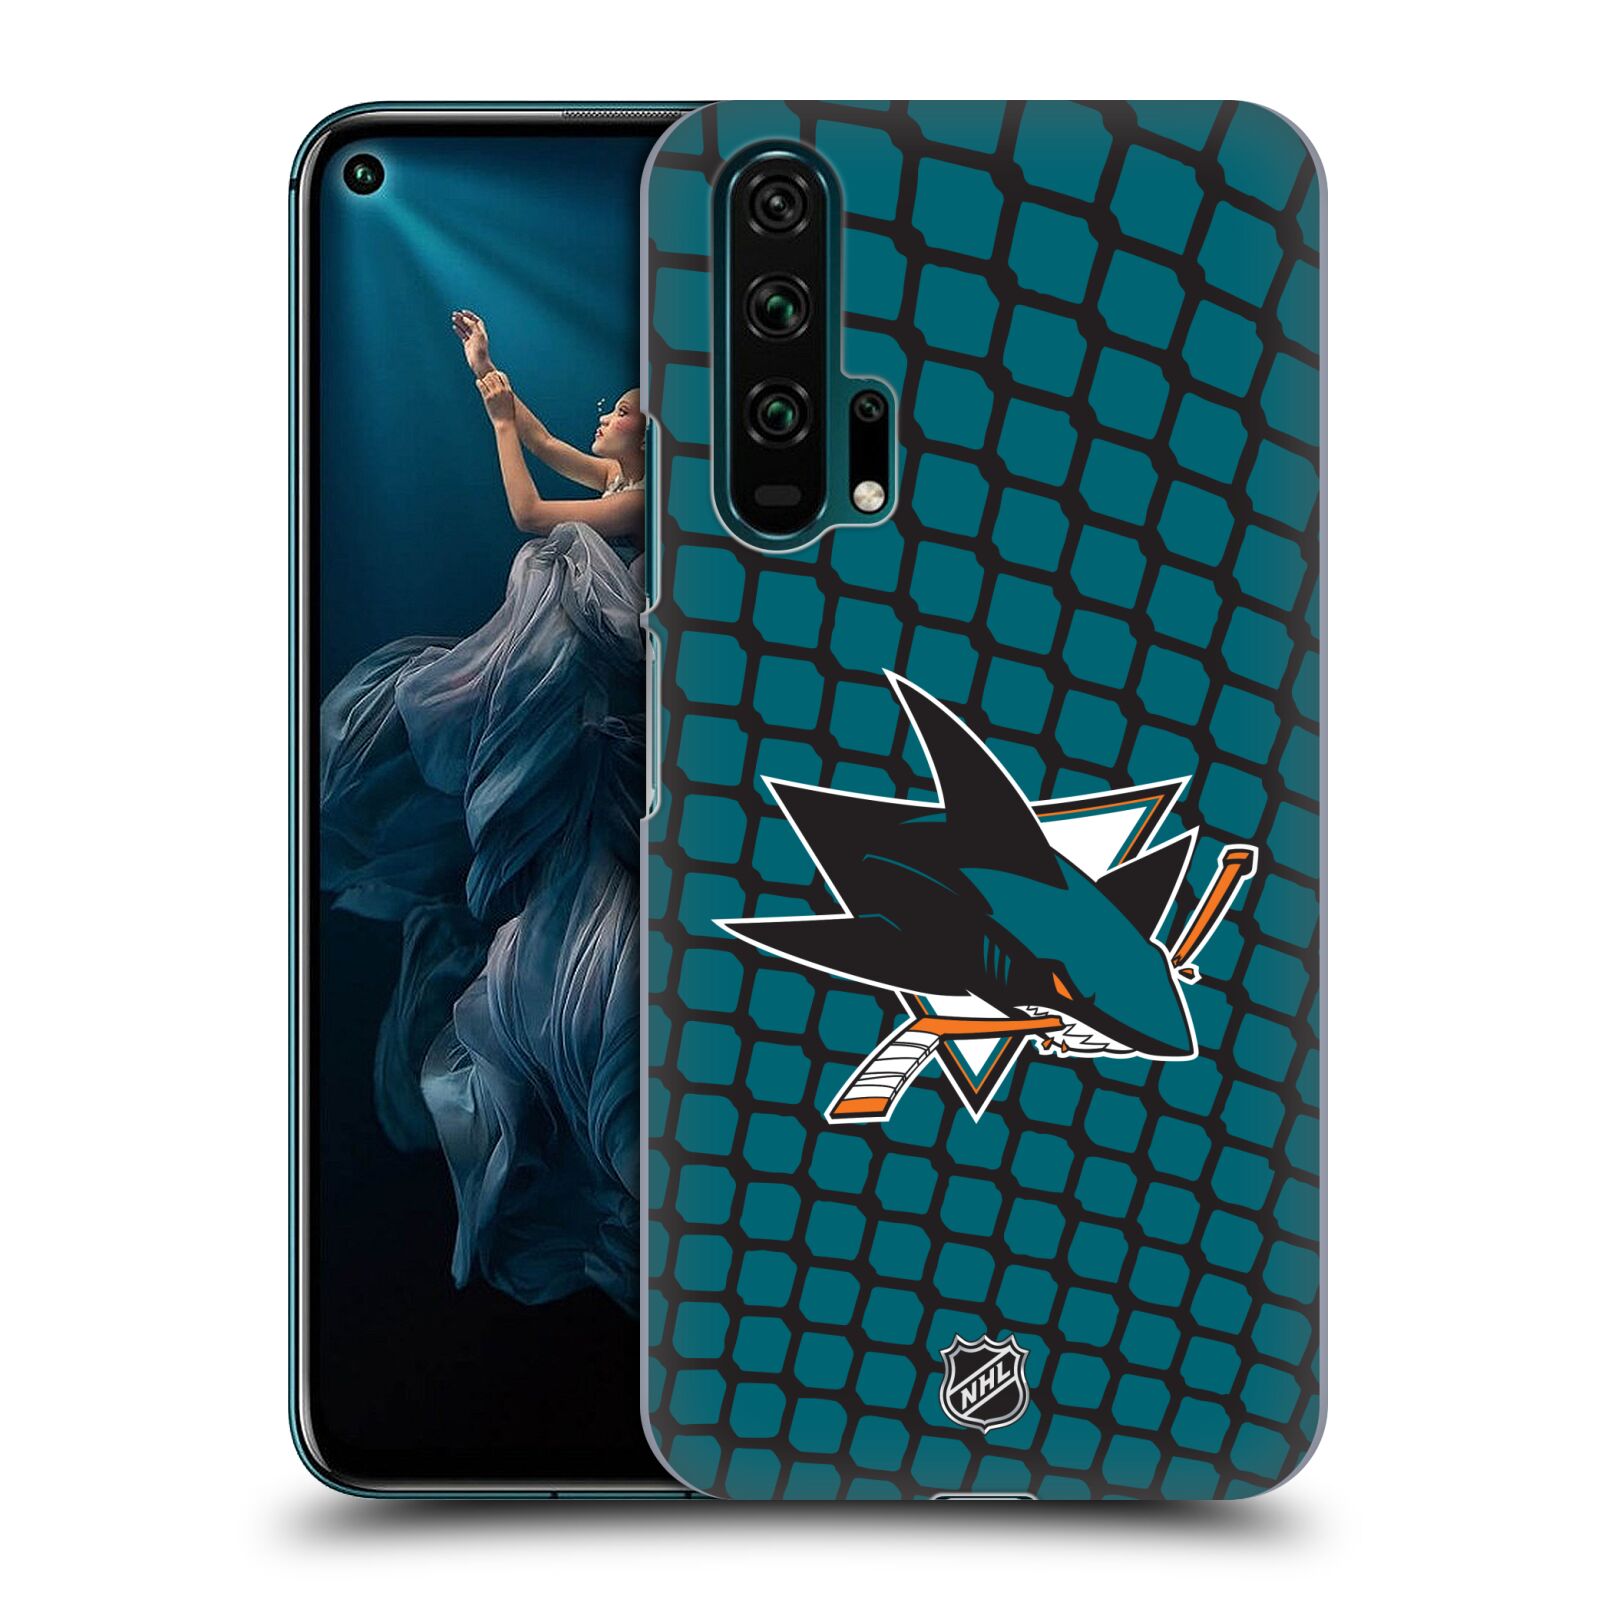 Pouzdro na mobil HONOR 20 PRO - HEAD CASE - Hokej NHL - San Jose Sharks - Znak v brance